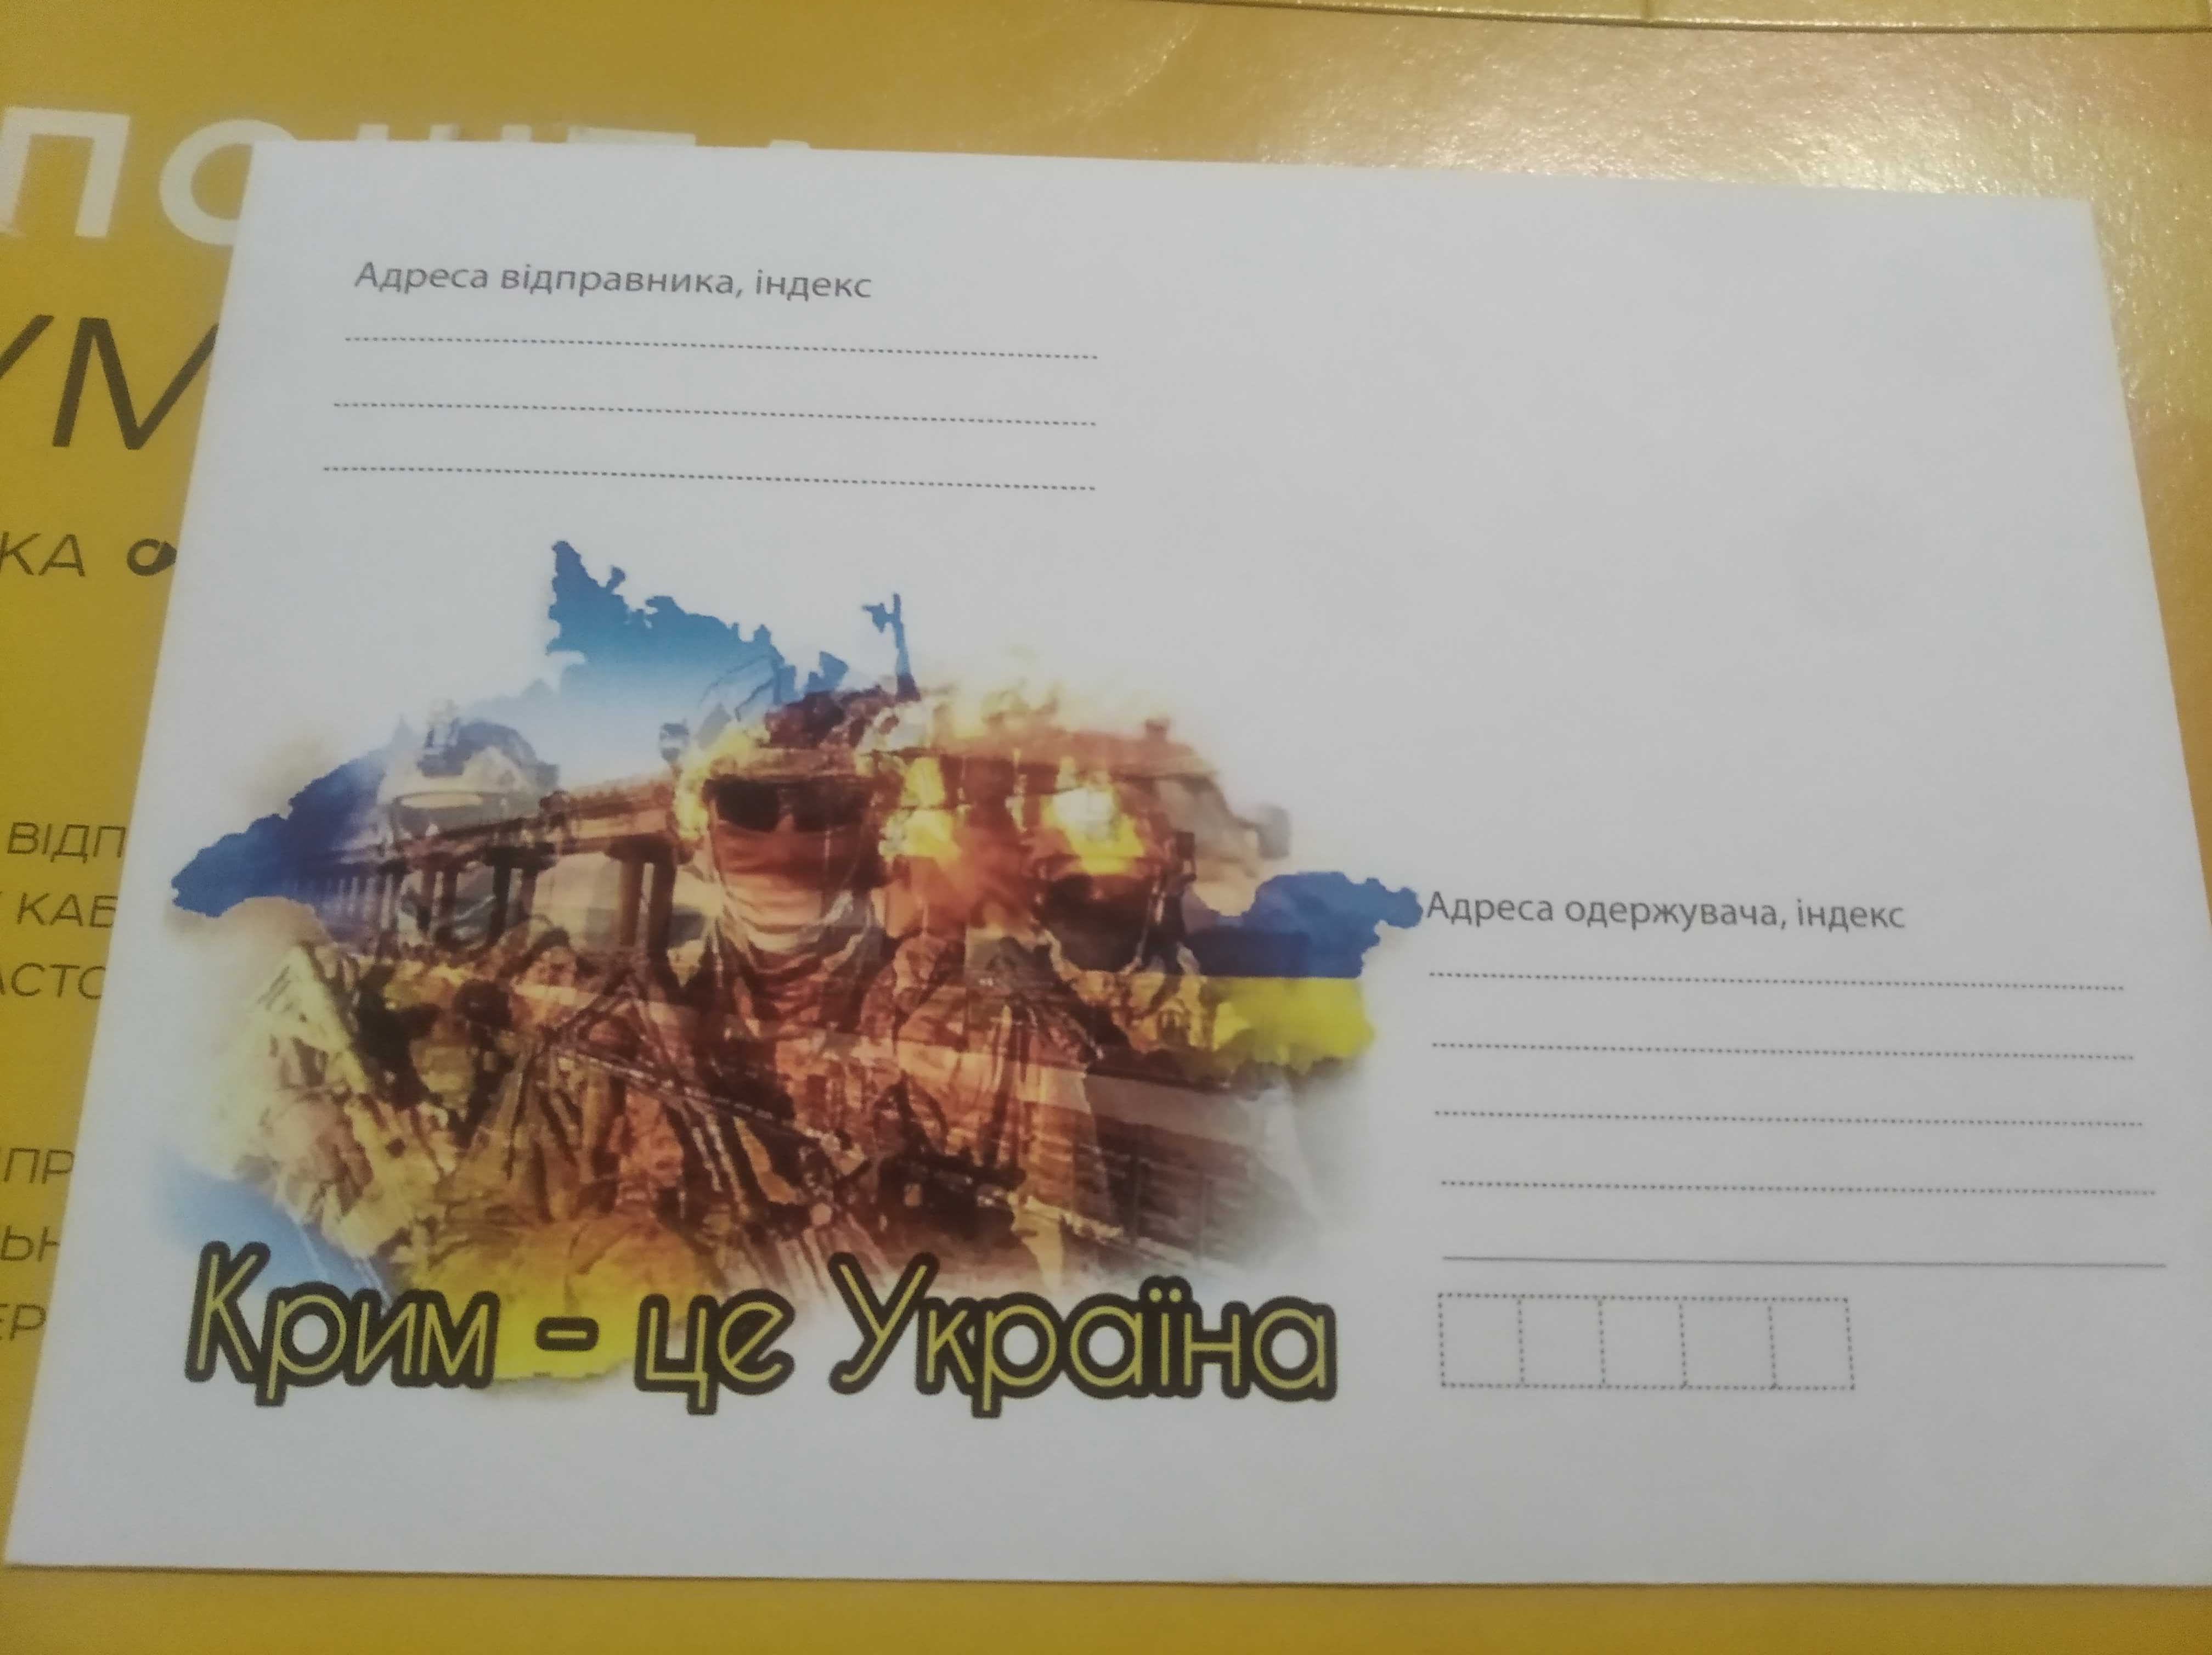 Марки Крим - це Україна